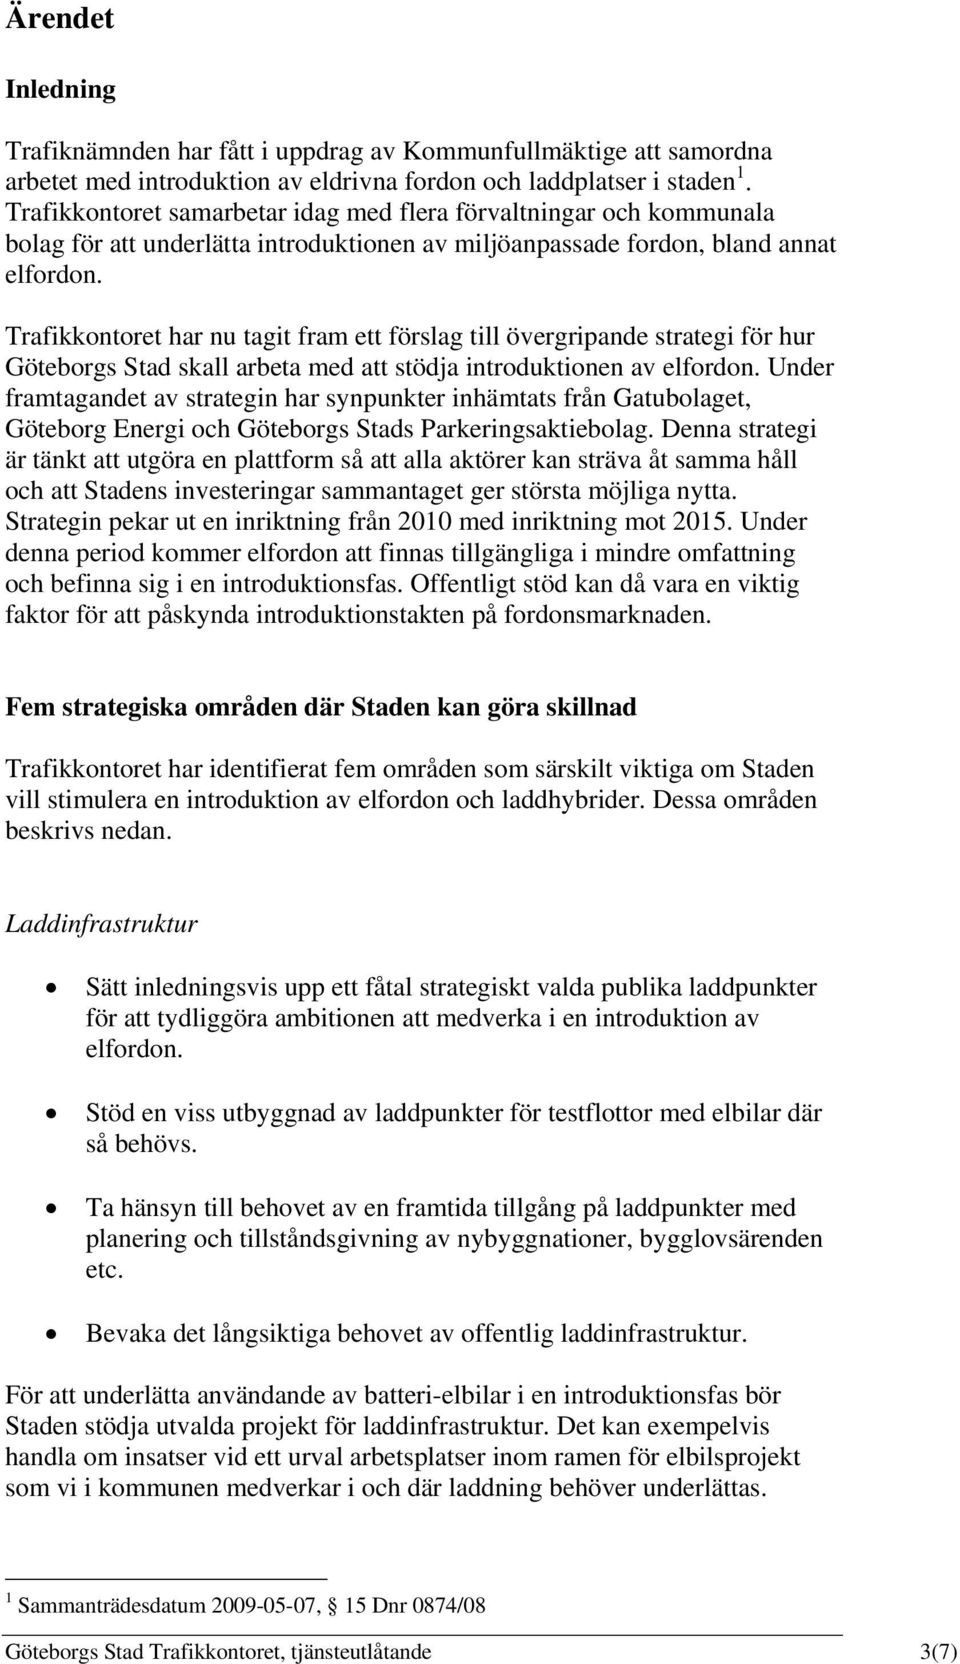 Trafikkontoret har nu tagit fram ett förslag till övergripande strategi för hur Göteborgs Stad skall arbeta med att stödja introduktionen av elfordon.